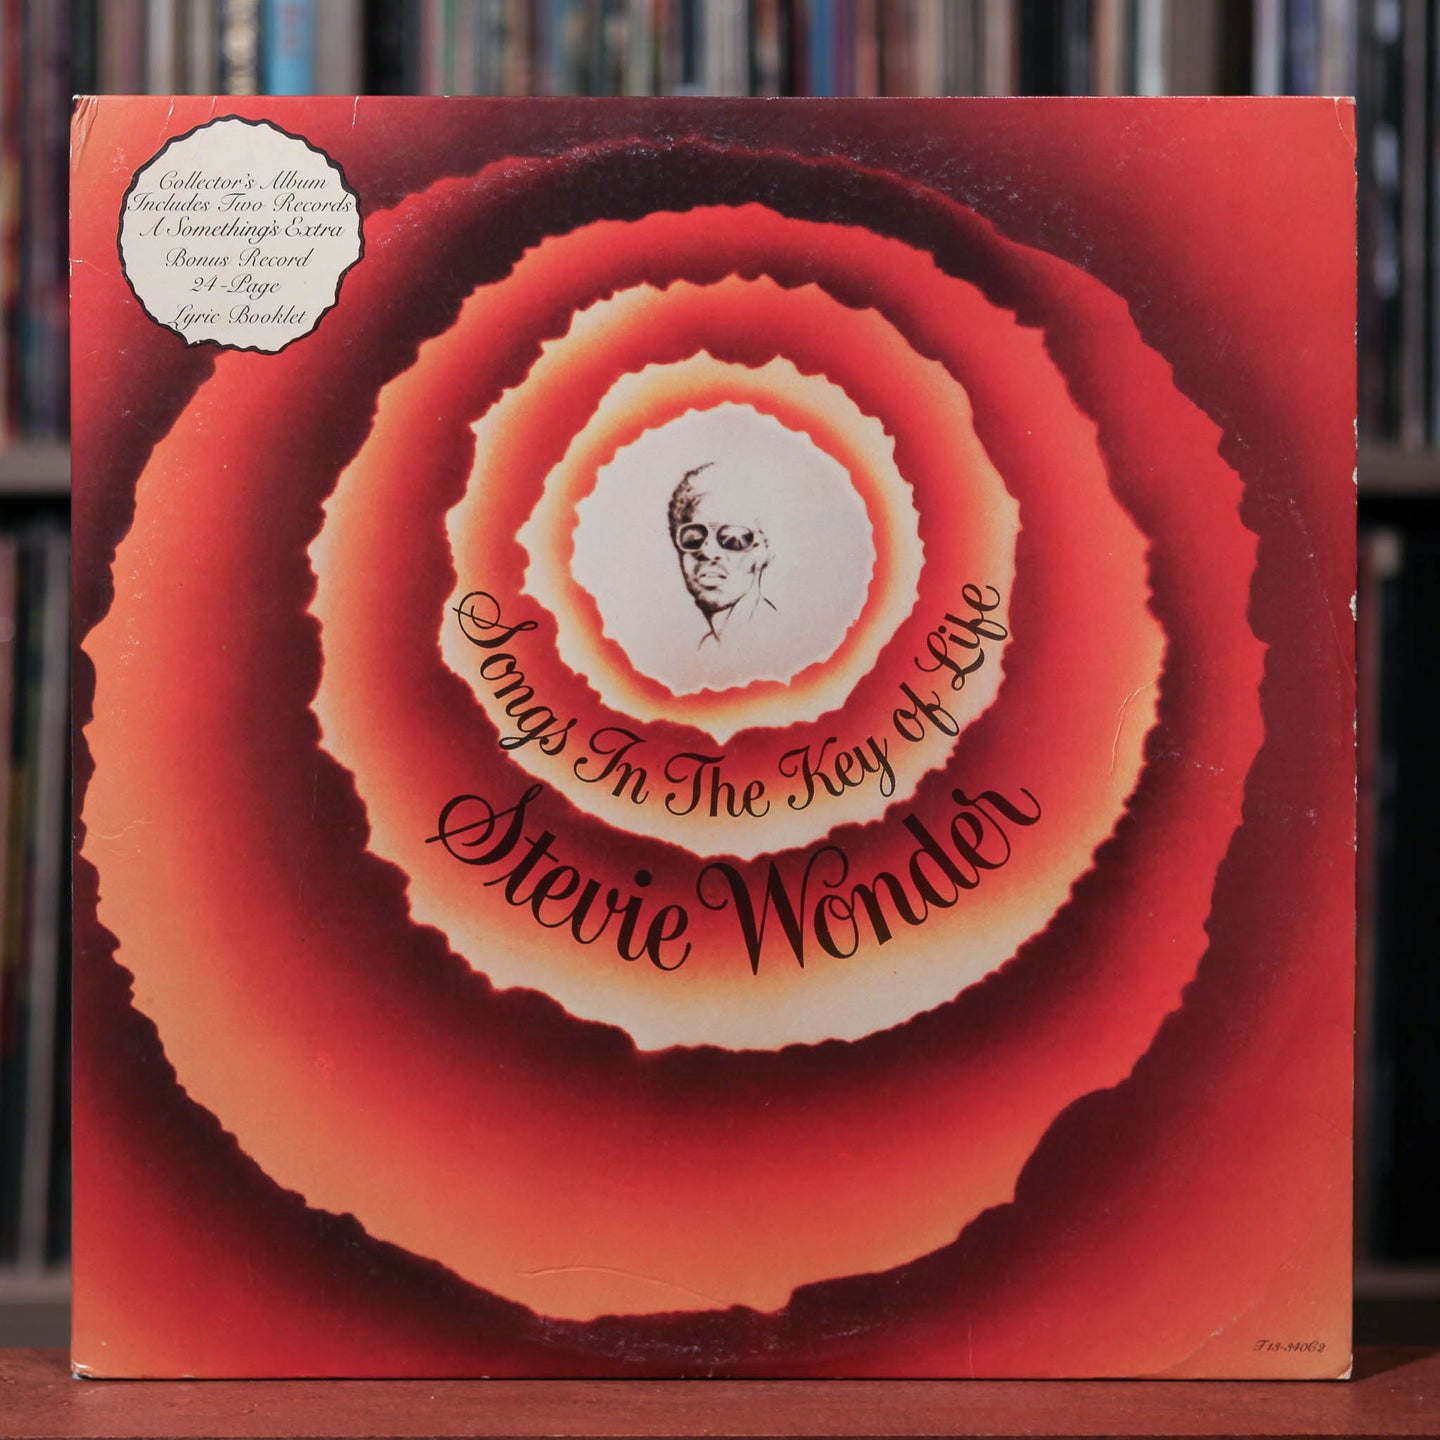 Stevie Wonder - Songs In The Key Of Life - 2LP - 1976 Tamla, VG/VG w/Booklet